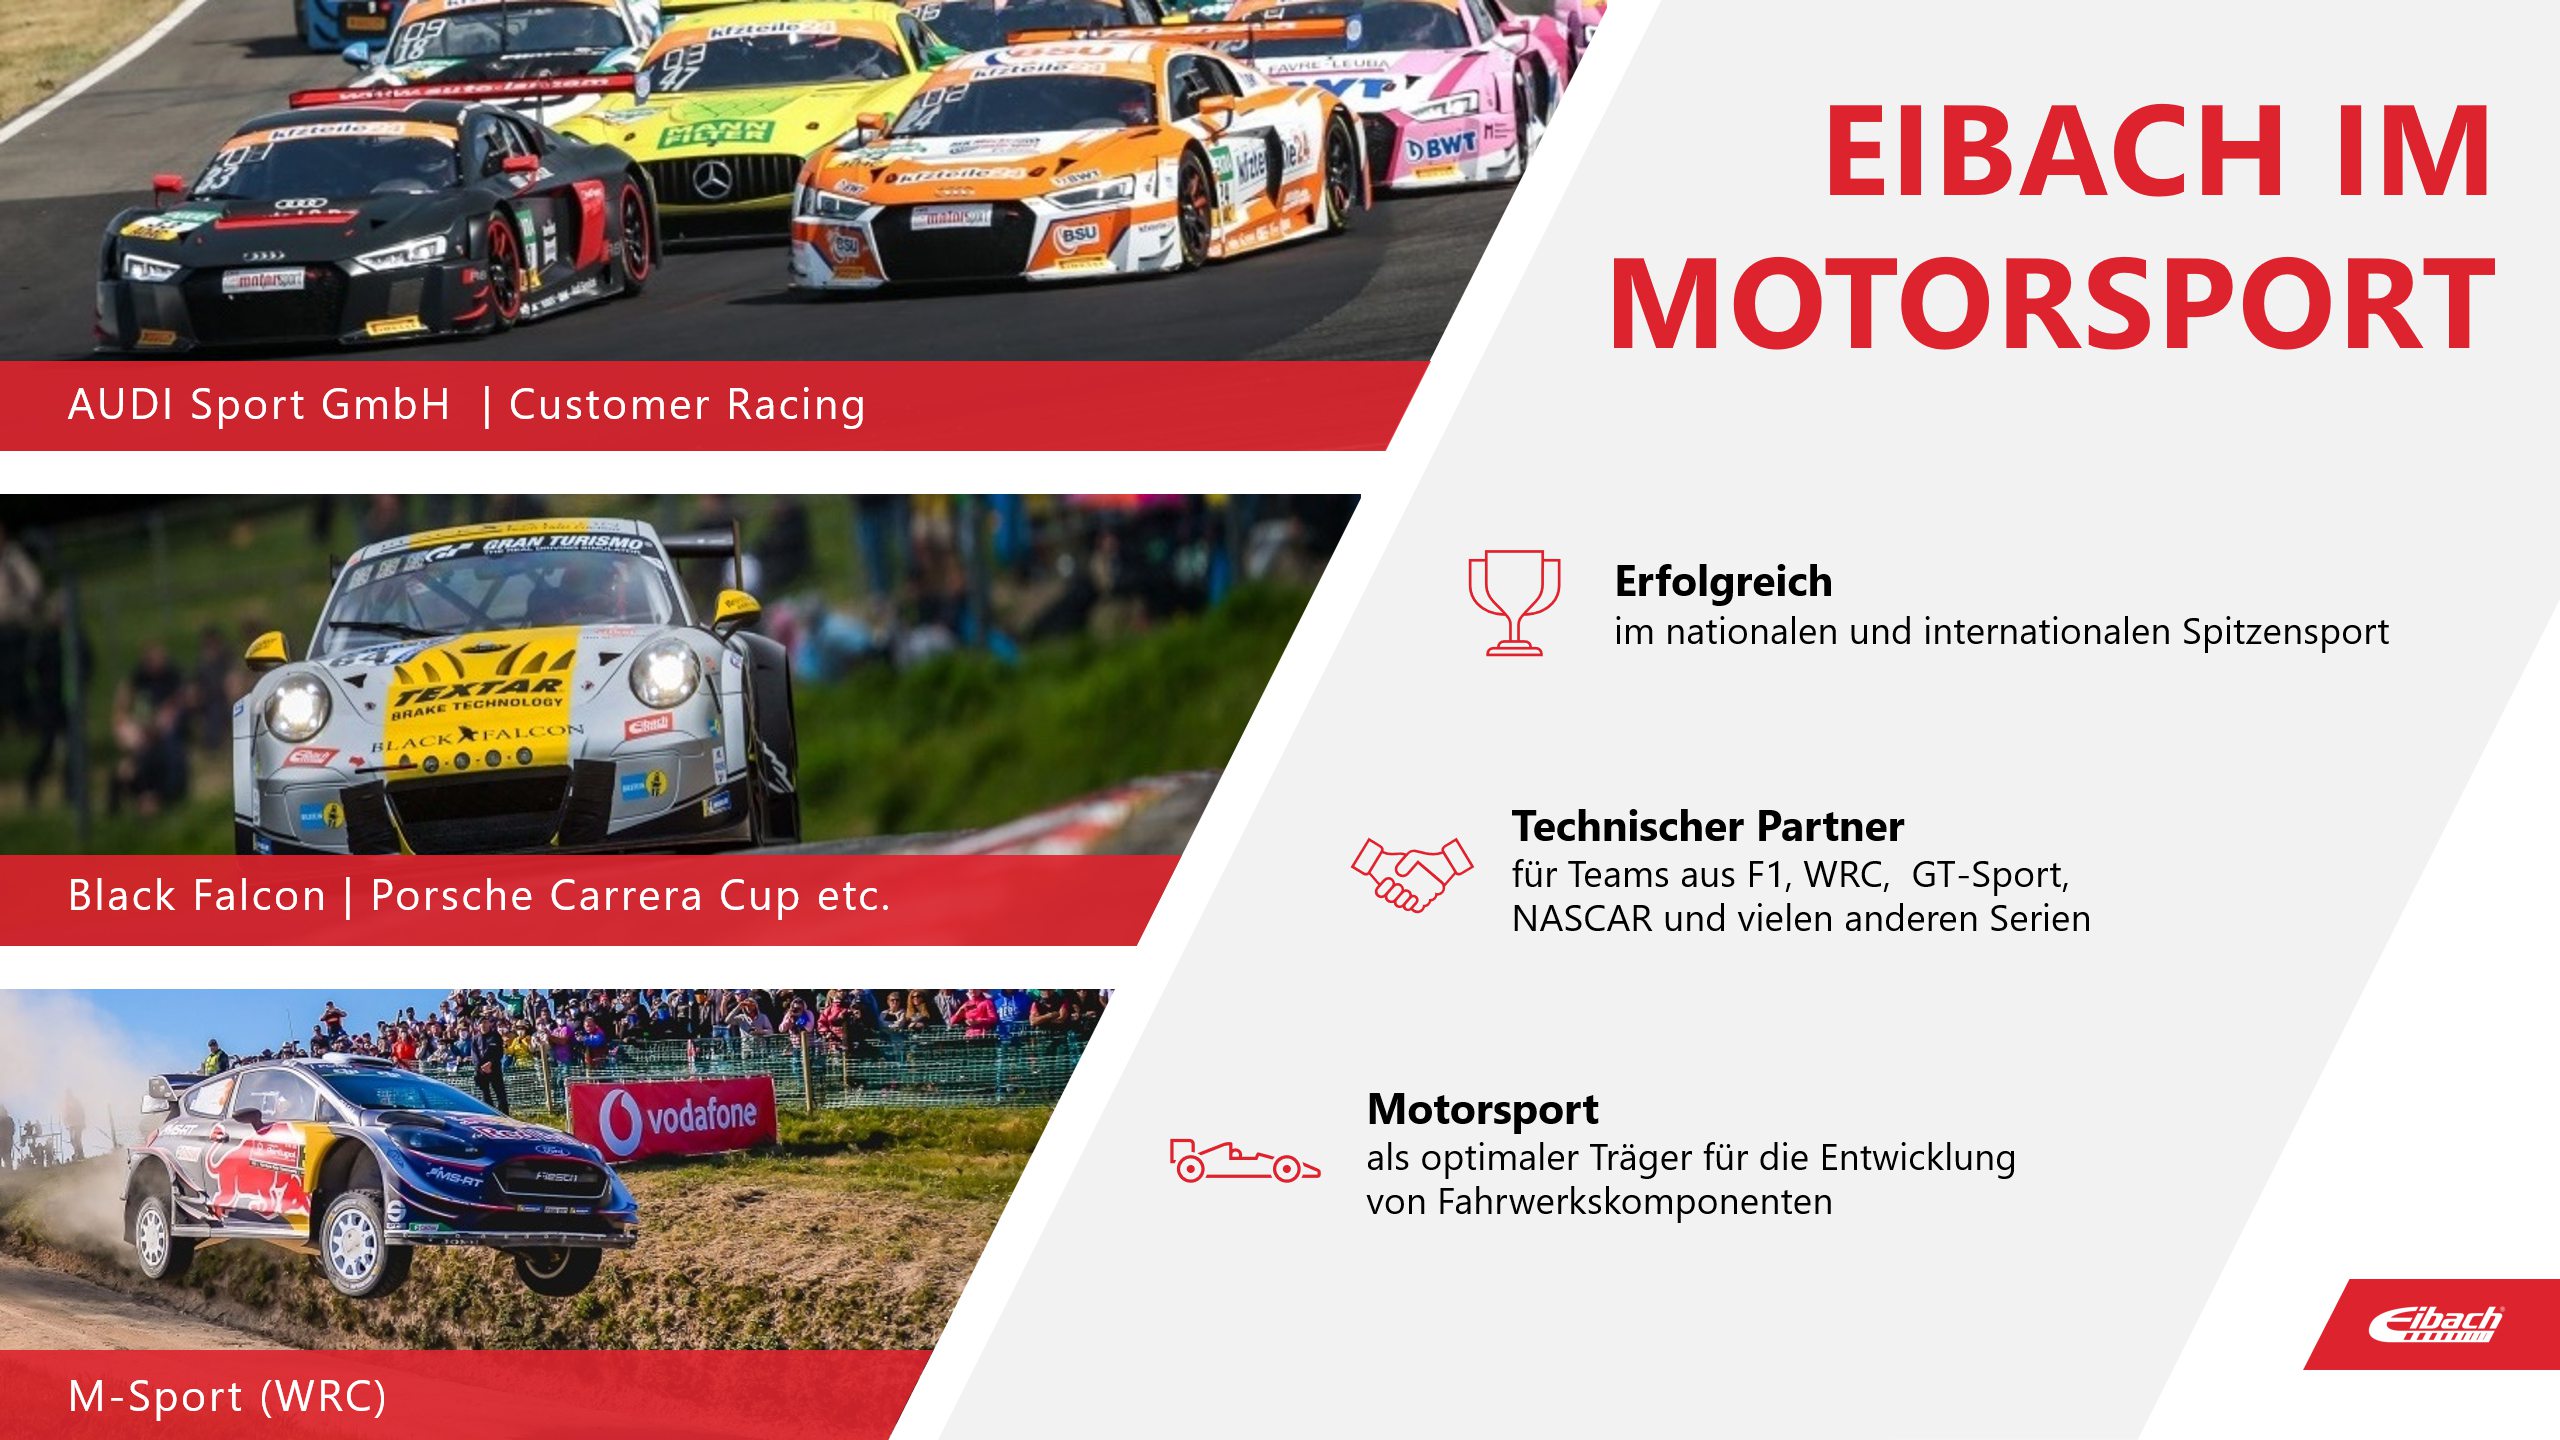 Eibach PowerPoint Präsentation Im Motorsport